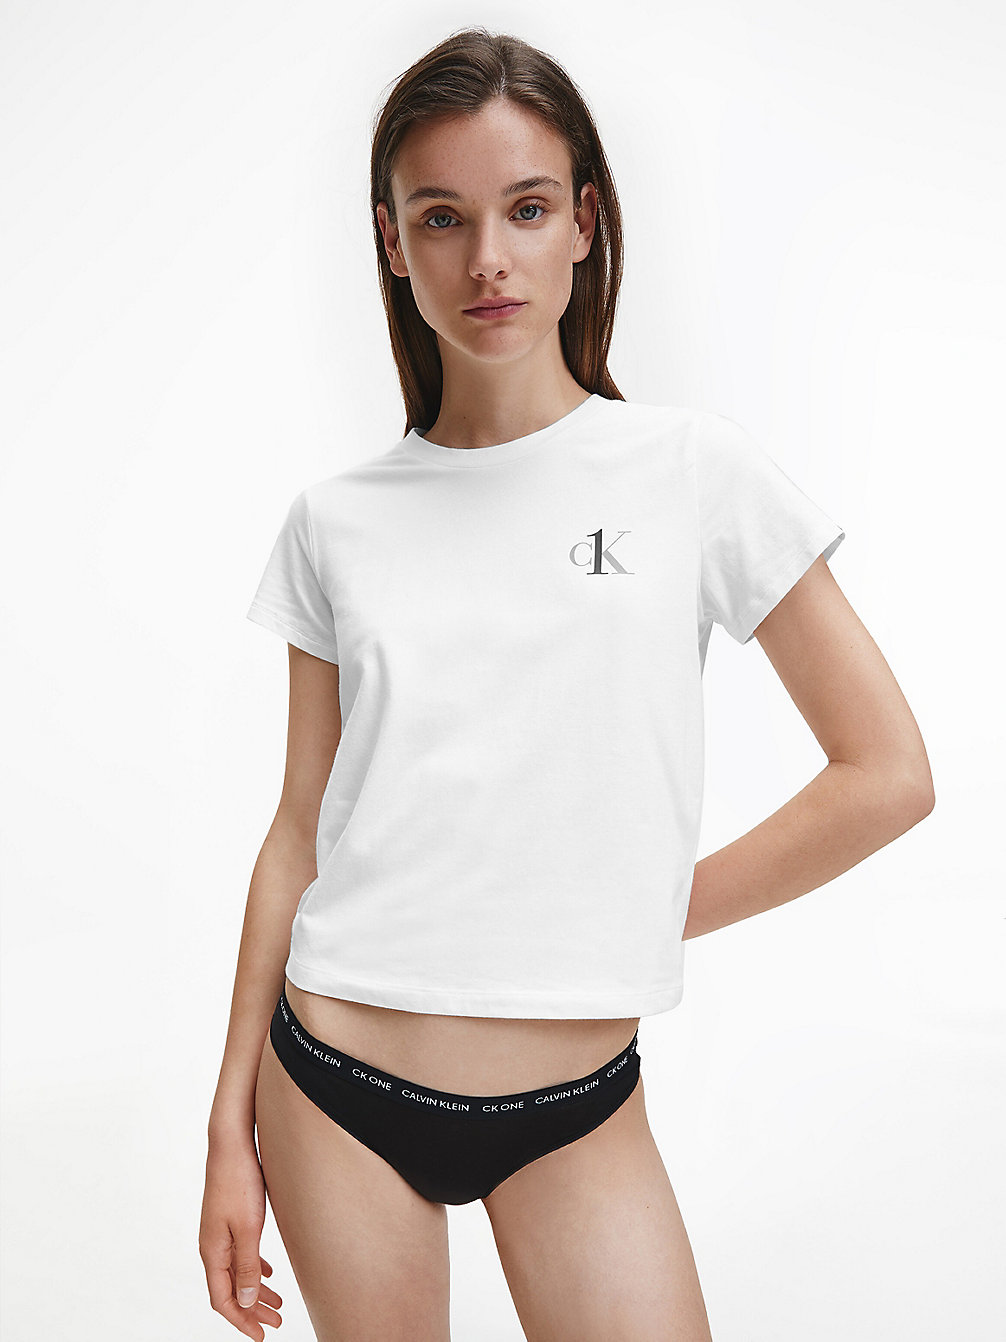 T-Shirt Lounge - CK One > WHITE > undefined donna > Calvin Klein